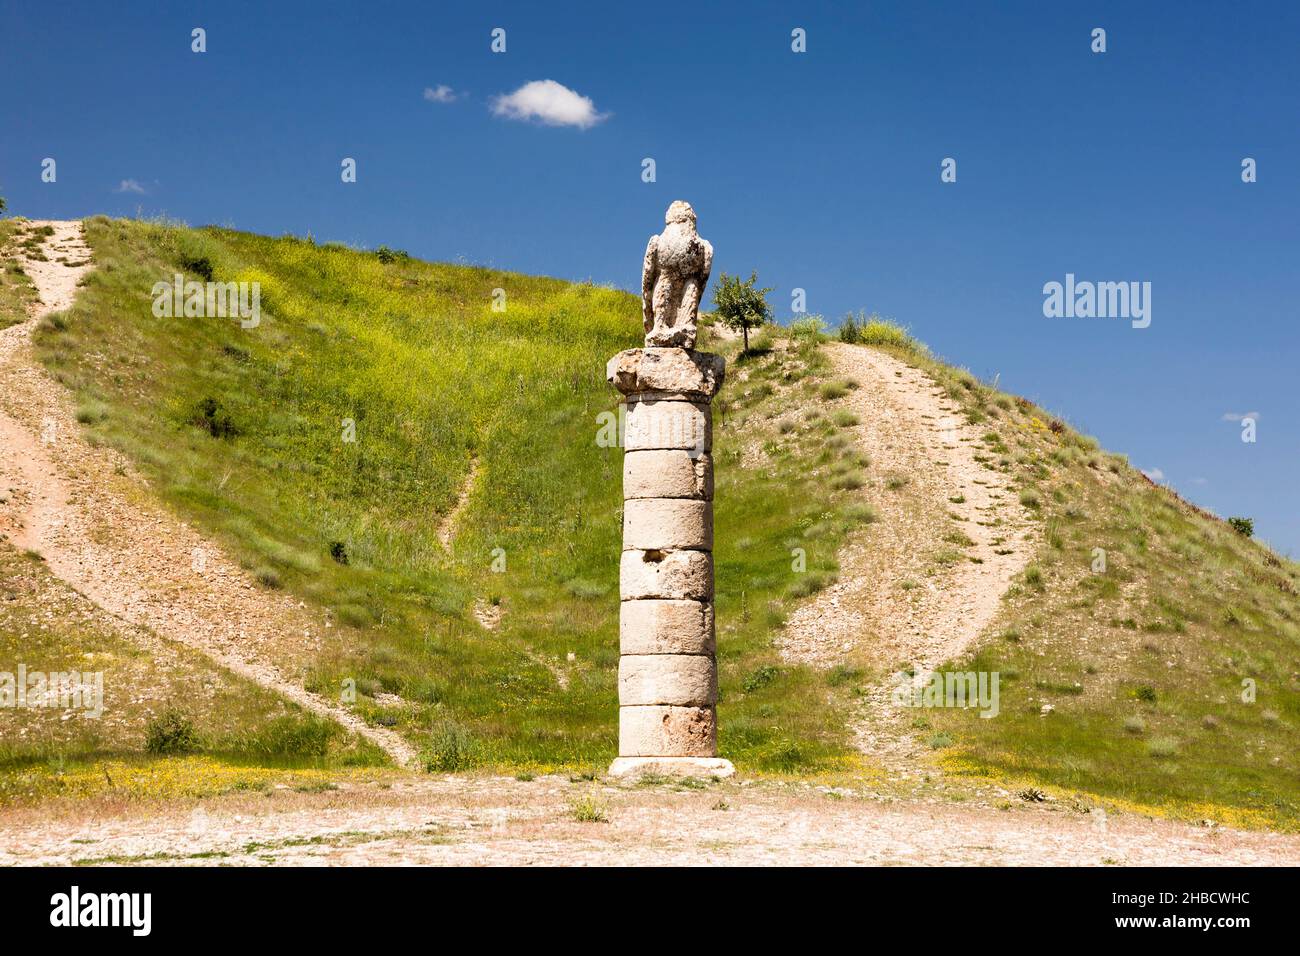 Tumulo di Karakus, statua dell'aquila in cima alla colonna romana, tomba reale del regno di Commagene, Kahta, provincia di Adıyaman, Anatolia, Turchia, Asia Foto Stock